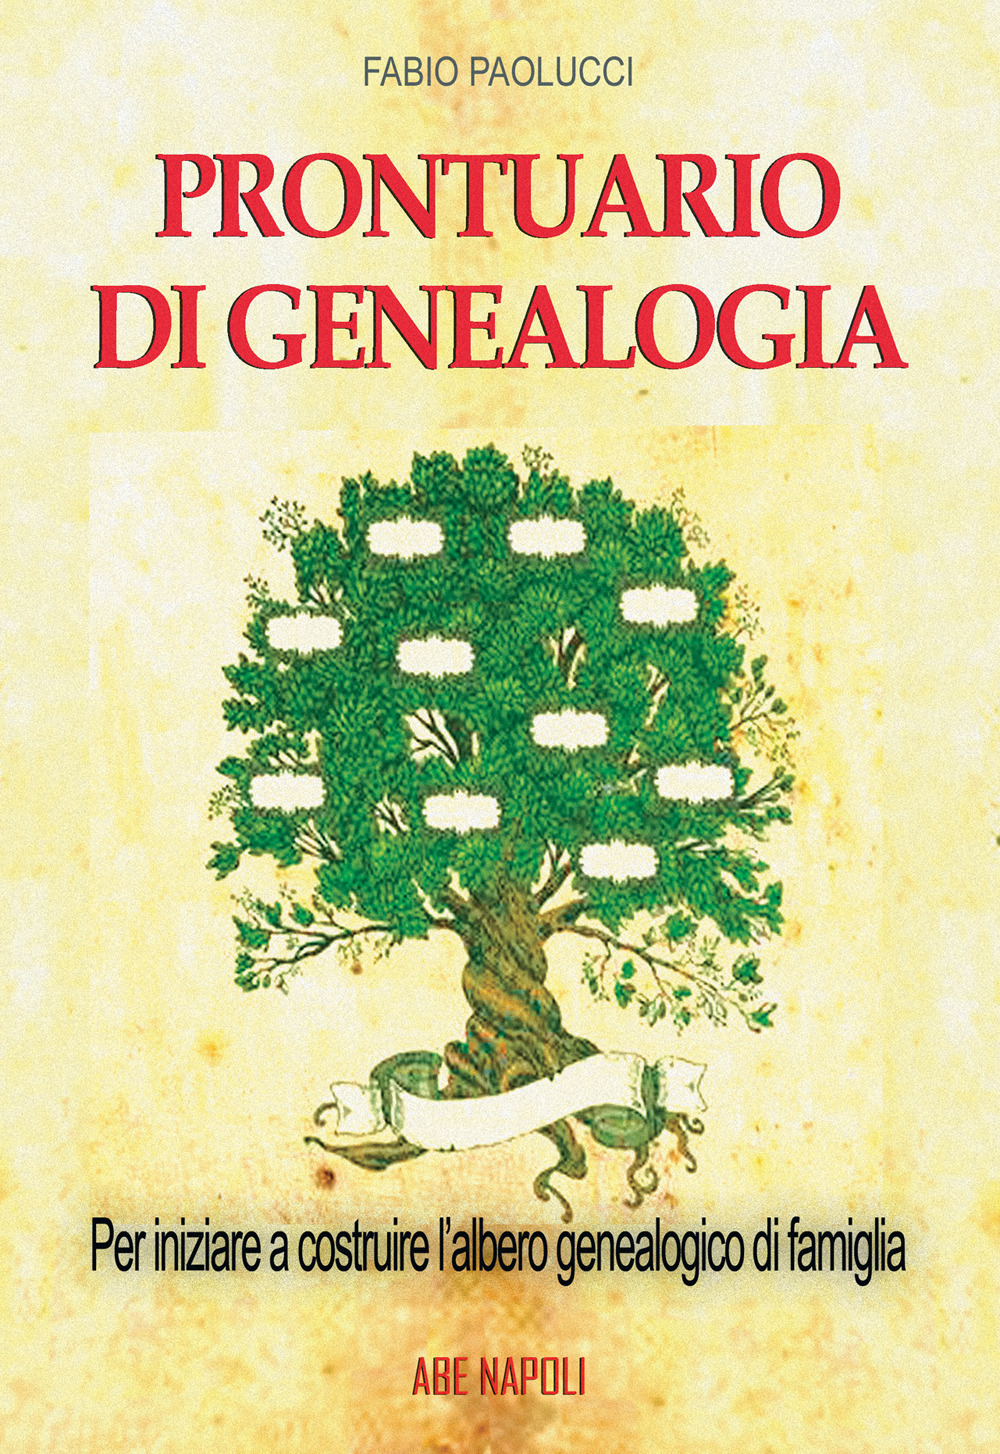 Prontuario di genealogia per iniziare a costruire l'albero genealogico di famiglia attraverso la ricerca in Archivio, Biblioteca, sui Registri Parrocchiali e Comunali